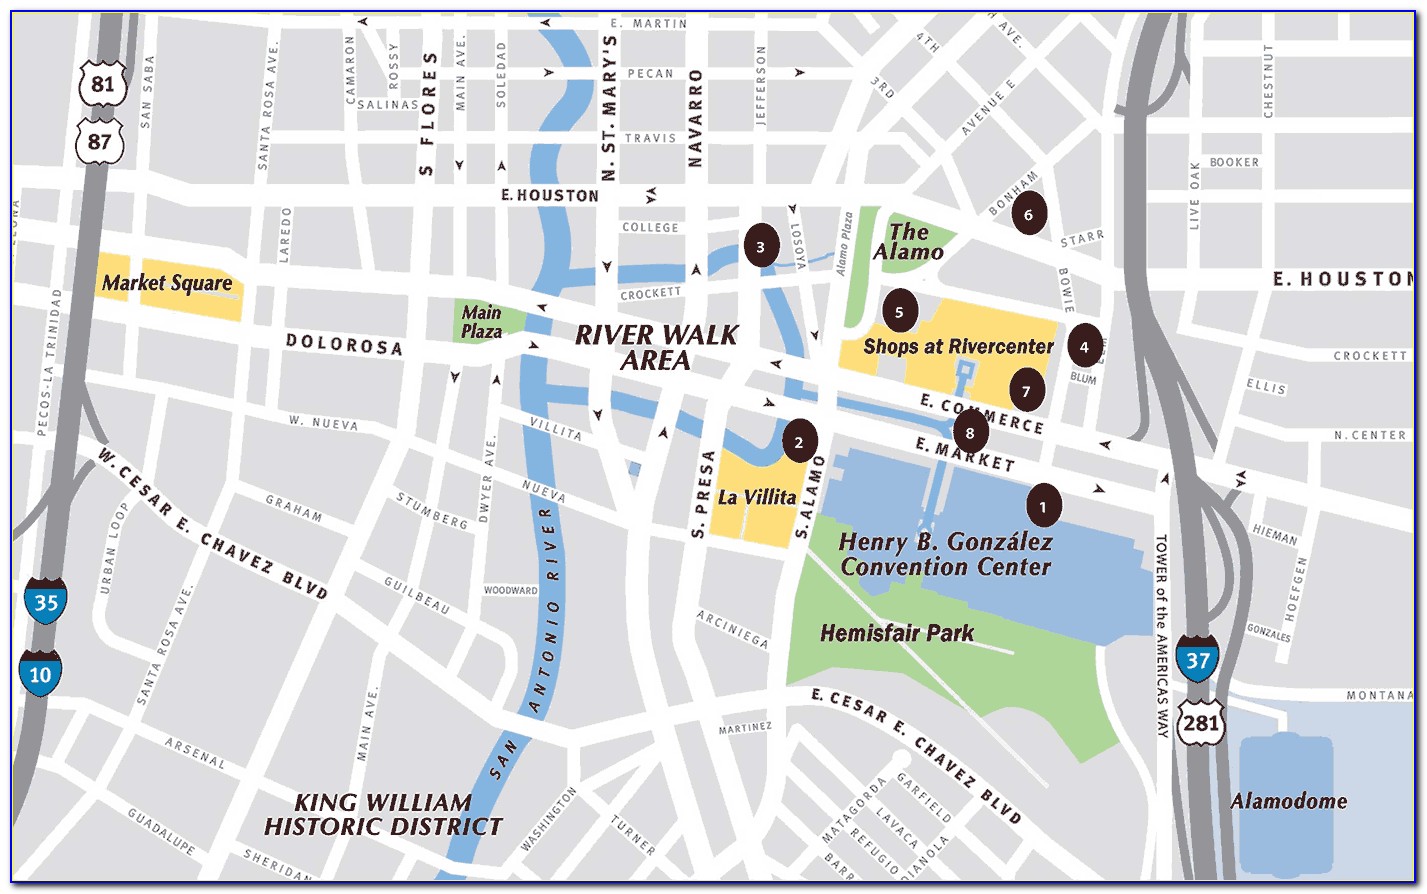 Map Of Marriott Hotels In San Antonio